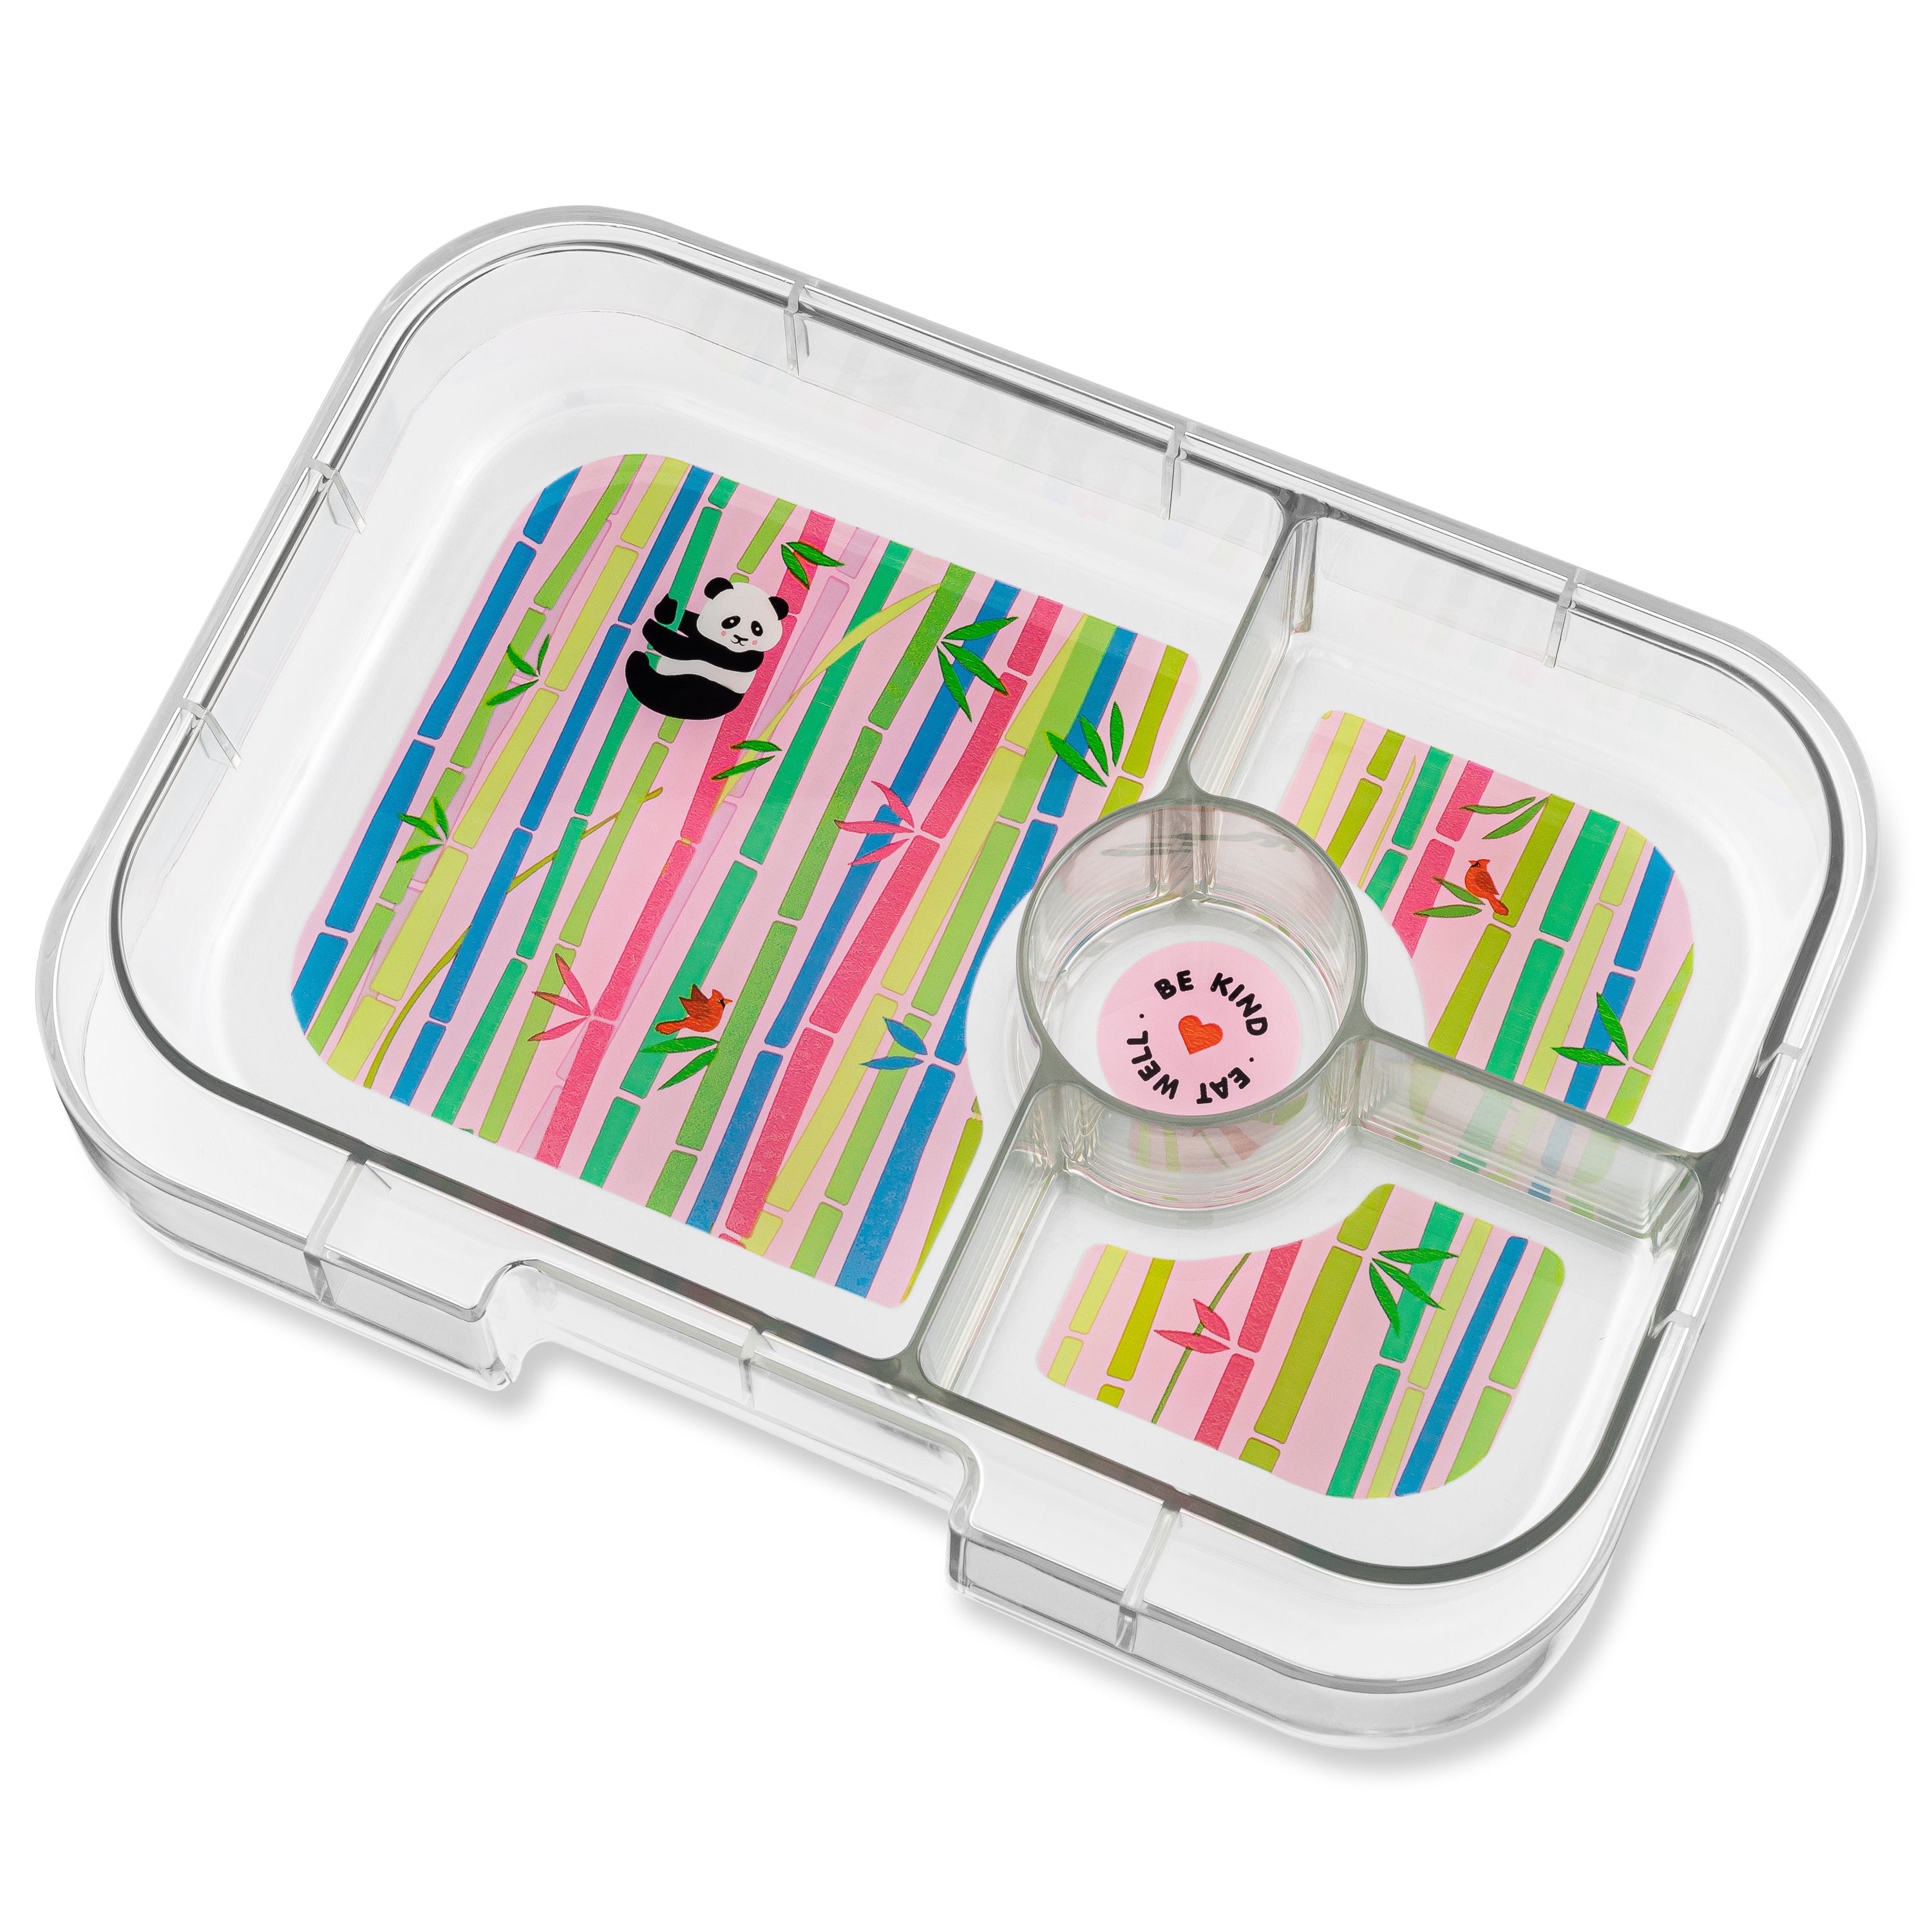 yumbox-panino-4-compartment-lunch-box-dreamy-purple-panda-yumb-dpii202110p- (2)